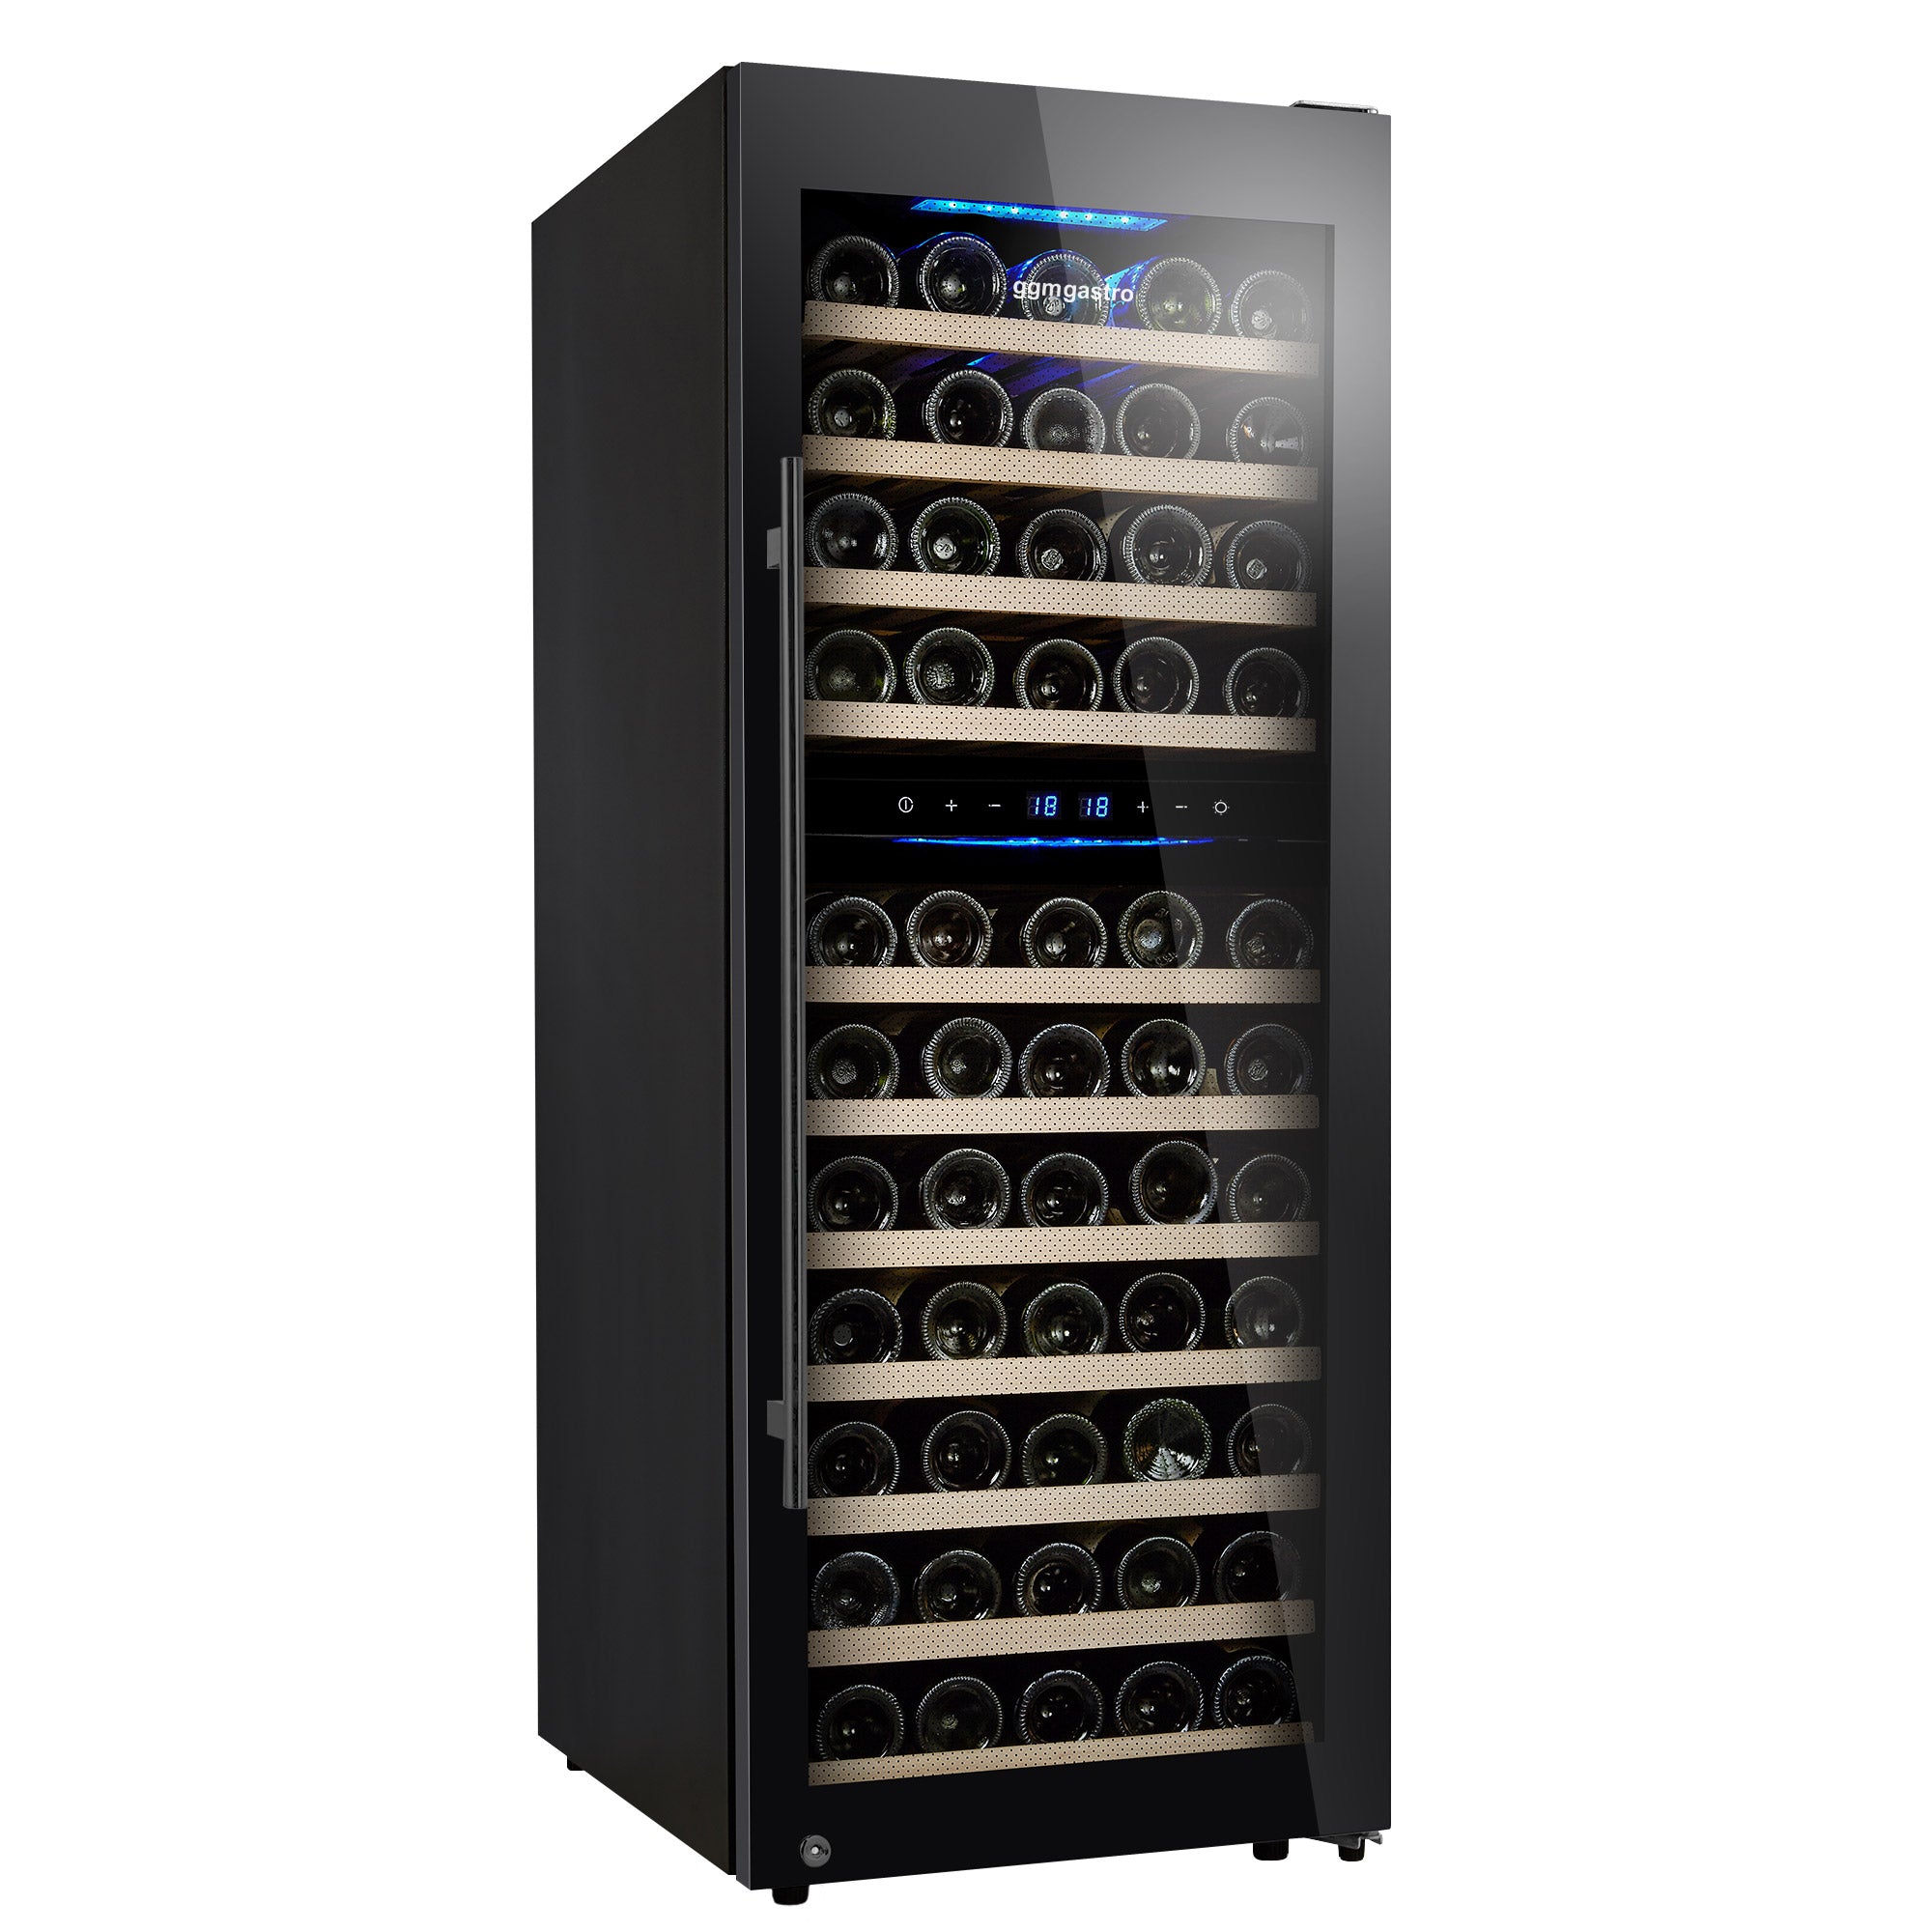 Vinkjøleskap - 192 liter - svart / med 2 klimasoner